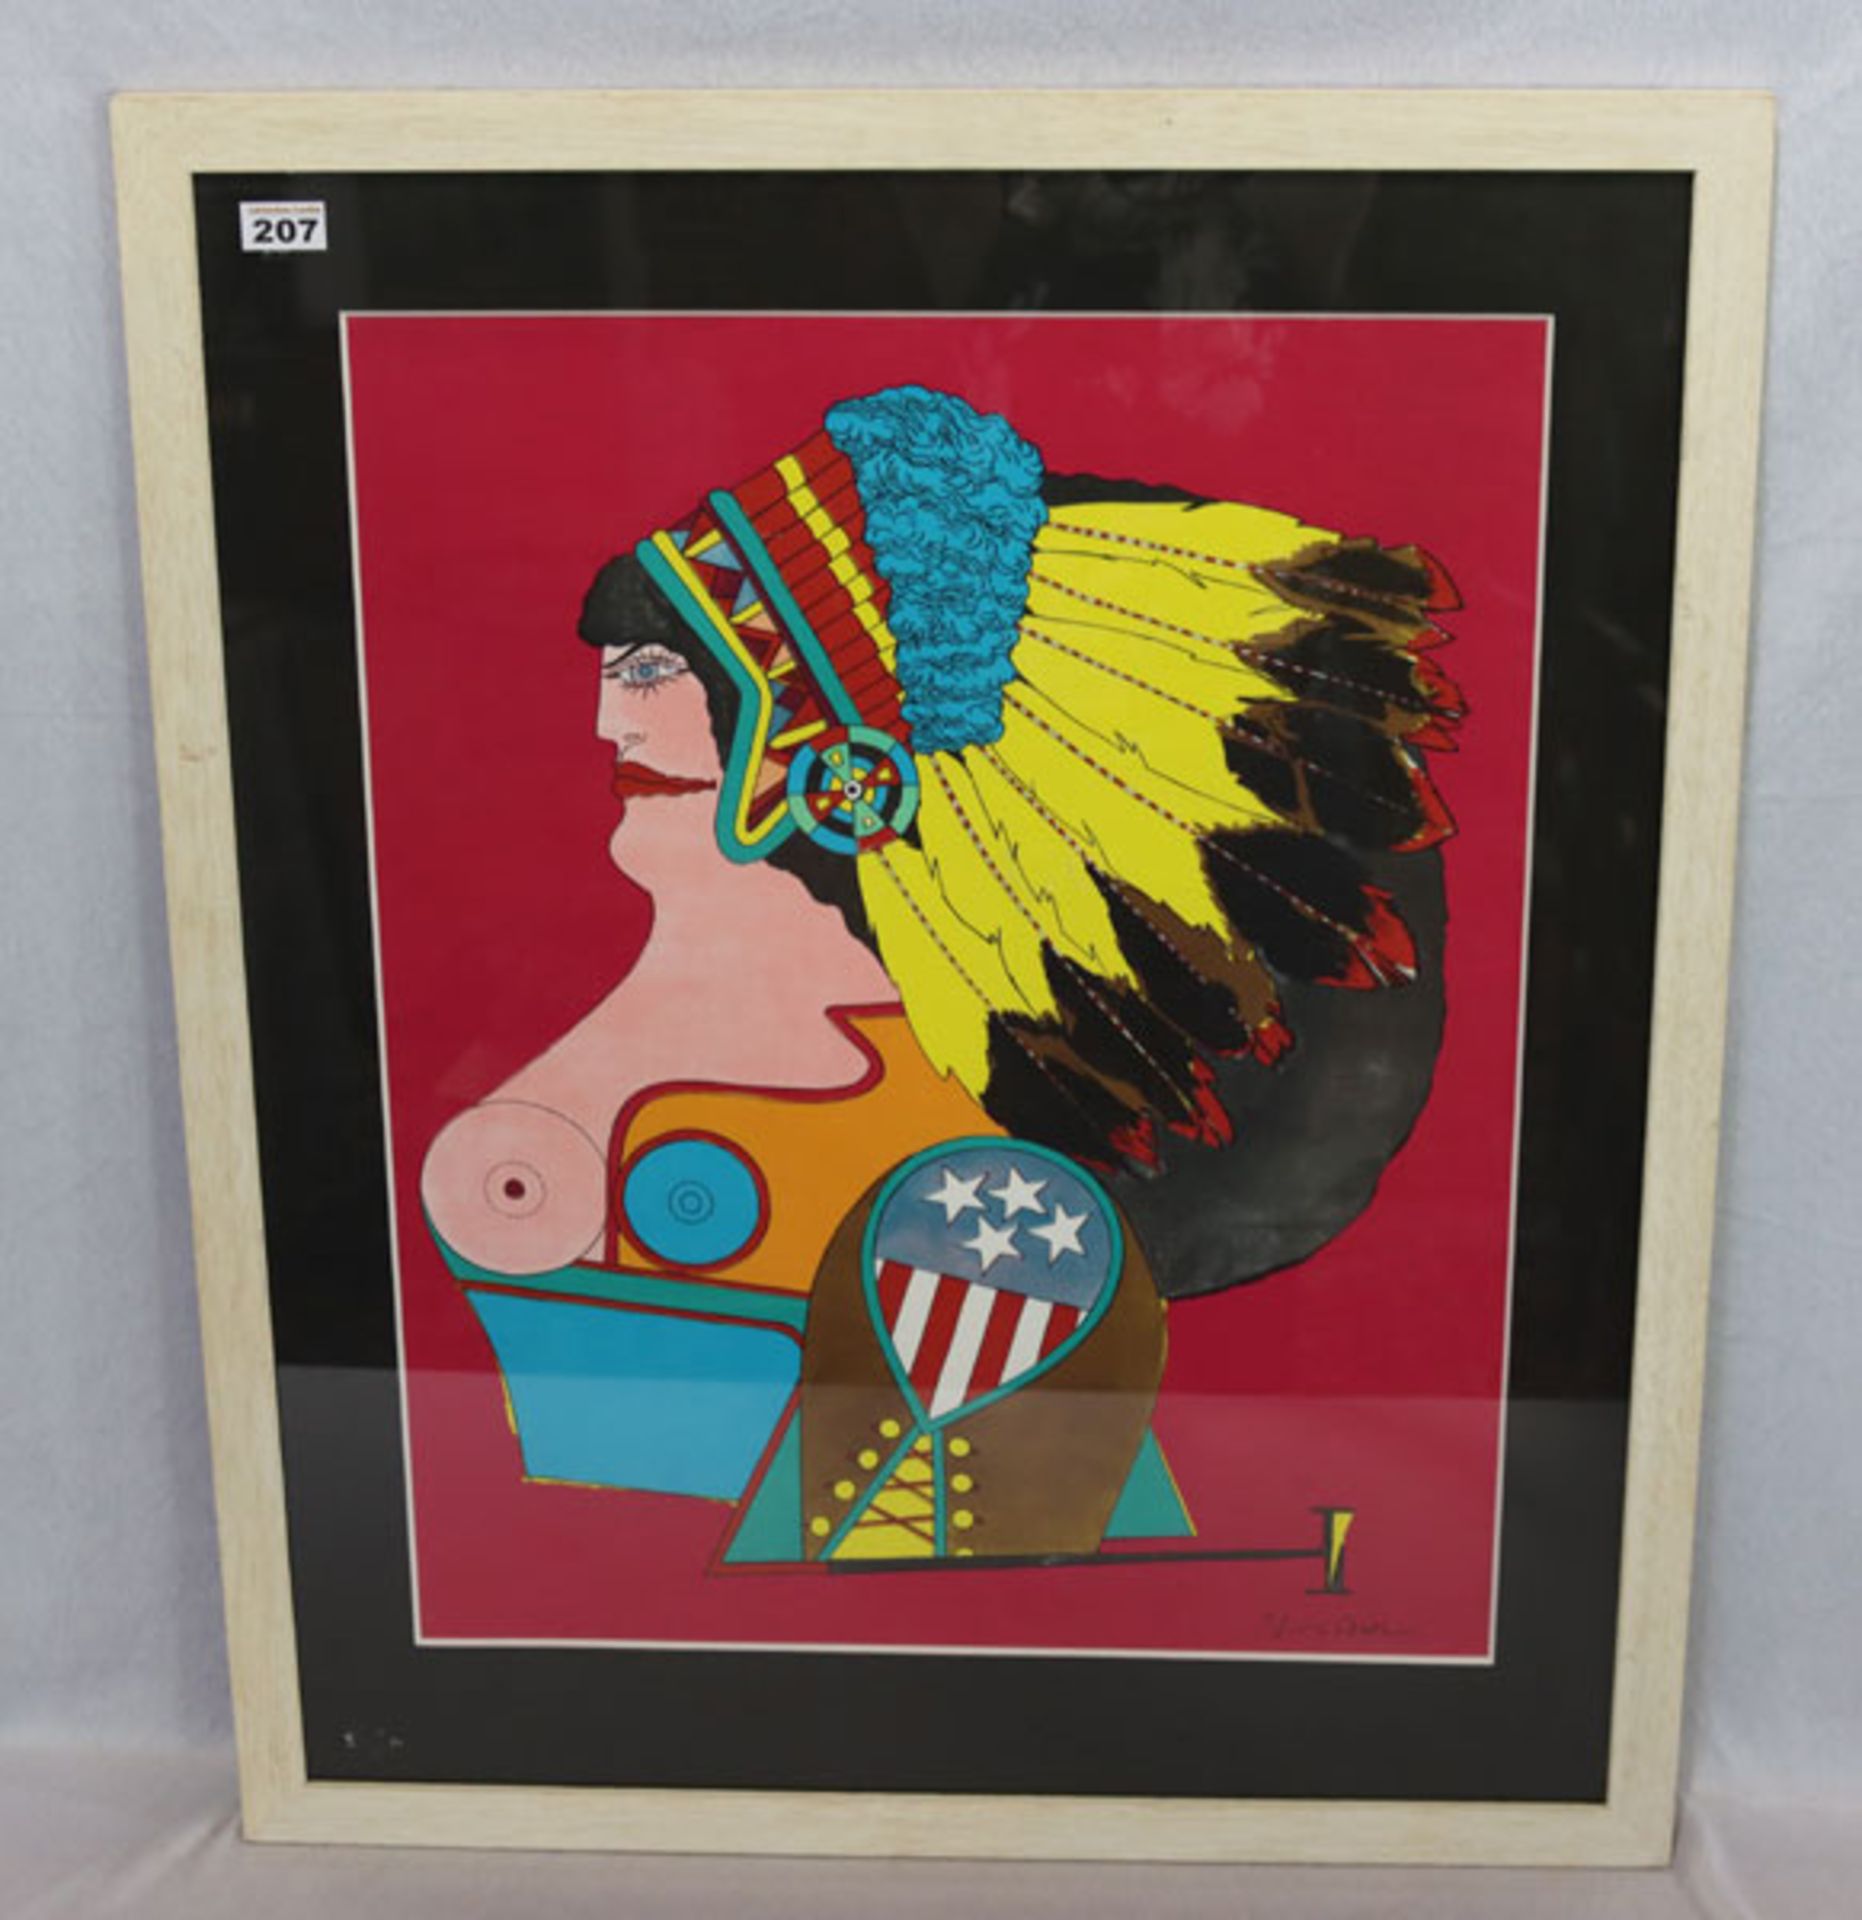 Farbplakat 'Miss American Indian', Richard Lindner, * 1901 + 1978, aus der Serie 'After Noon', mit